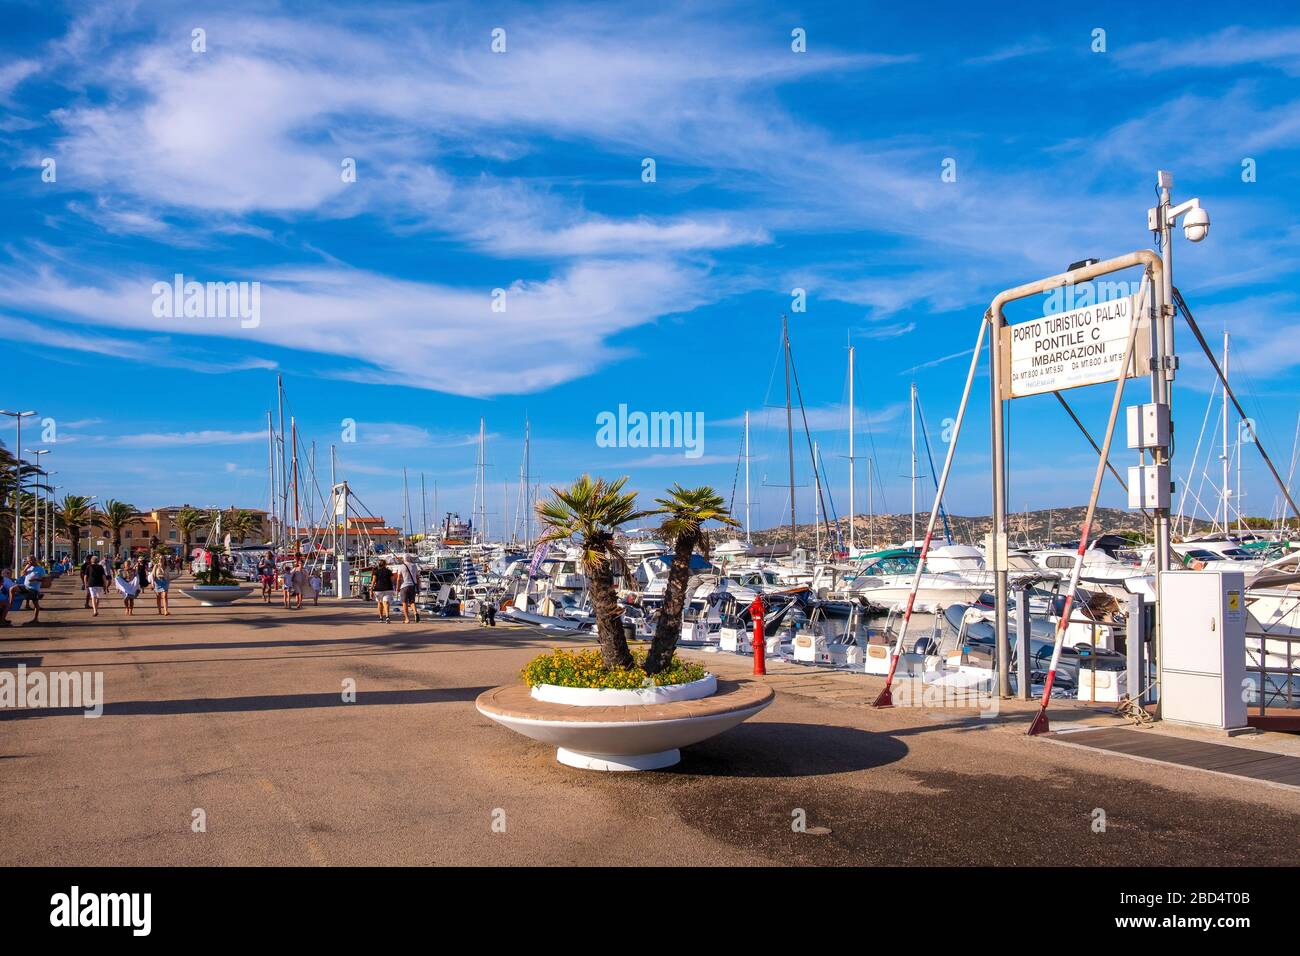 Palau, Sardinia / Italy - 2019/07/17: Panoramic view of touristic yacht port and marina - Porto Turistico Palau - with yachts pier and Costa Smeralda Stock Photo